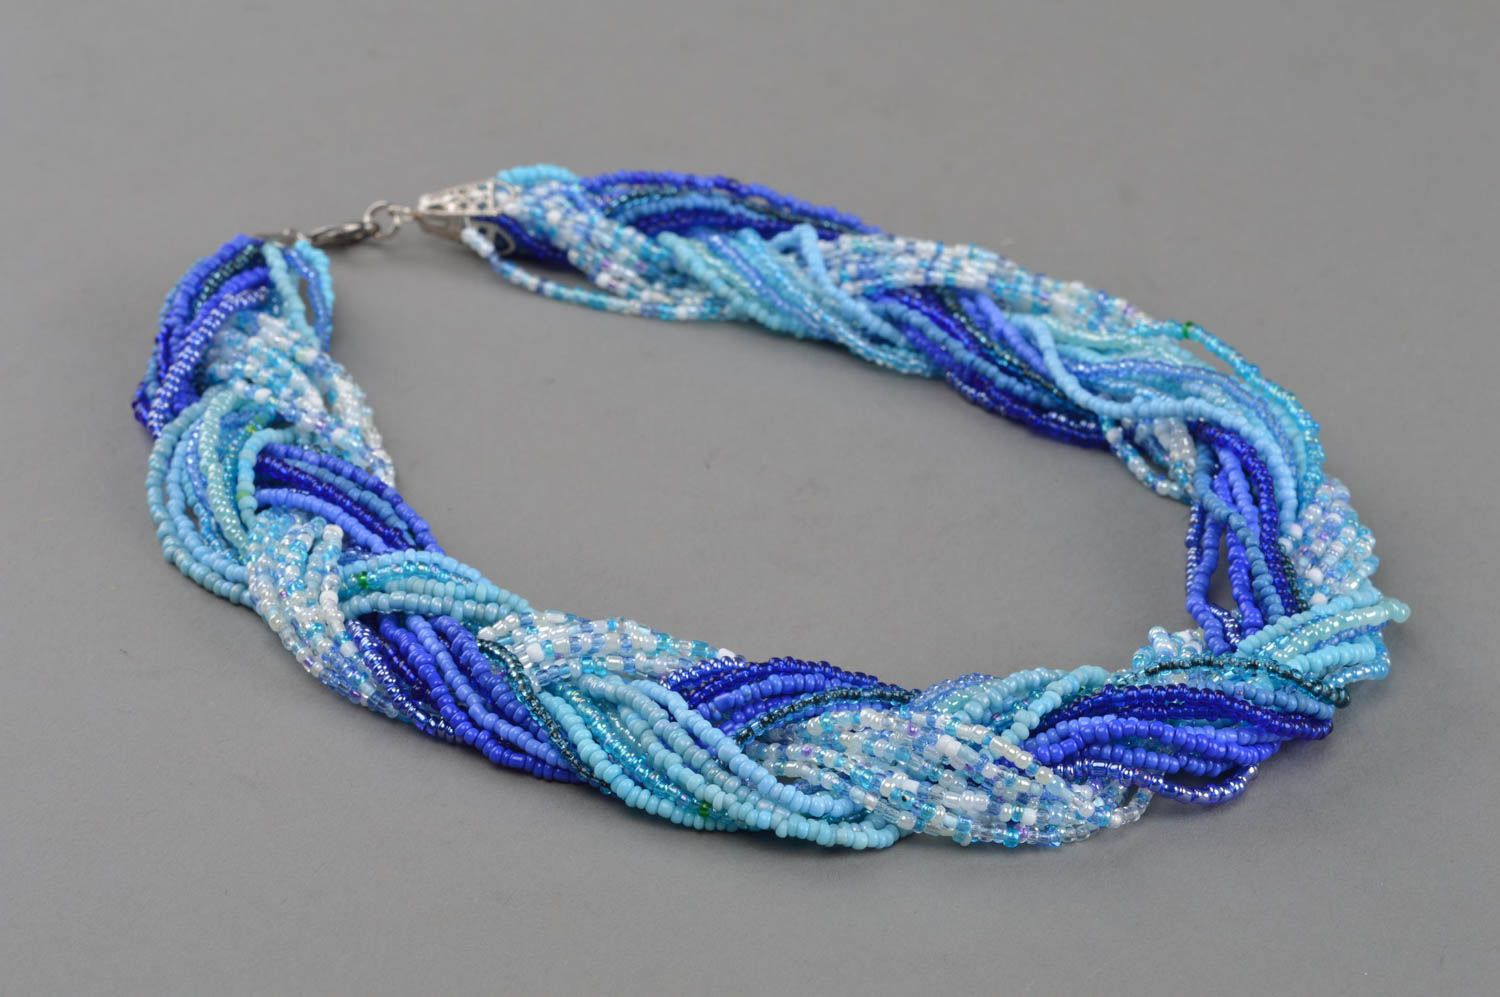 Ожерелье из бисера в синих и голубых тонах ручной работы плетеное в косичку  фото 2